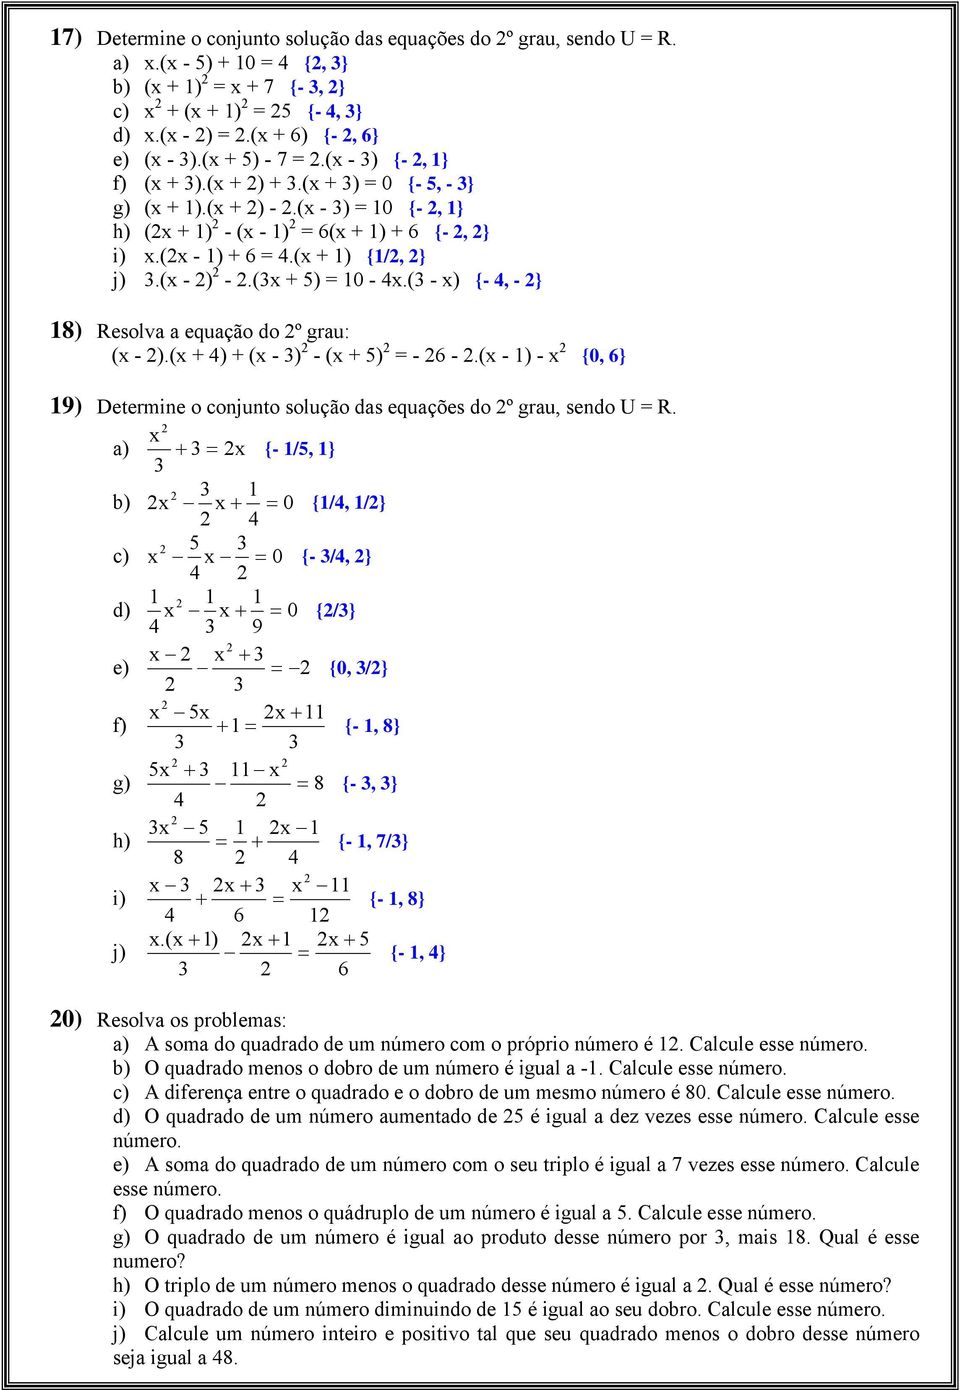 (3x + ) = 10-4x.(3 - x) {- 4, - } 18) Resolva a equação do º grau: (x - ).(x + 4) + (x - 3) - (x + ) = - 6 -.(x - 1) - x {0, 6} 19) Determine o conjunto solução das equações do º grau, sendo U = R.